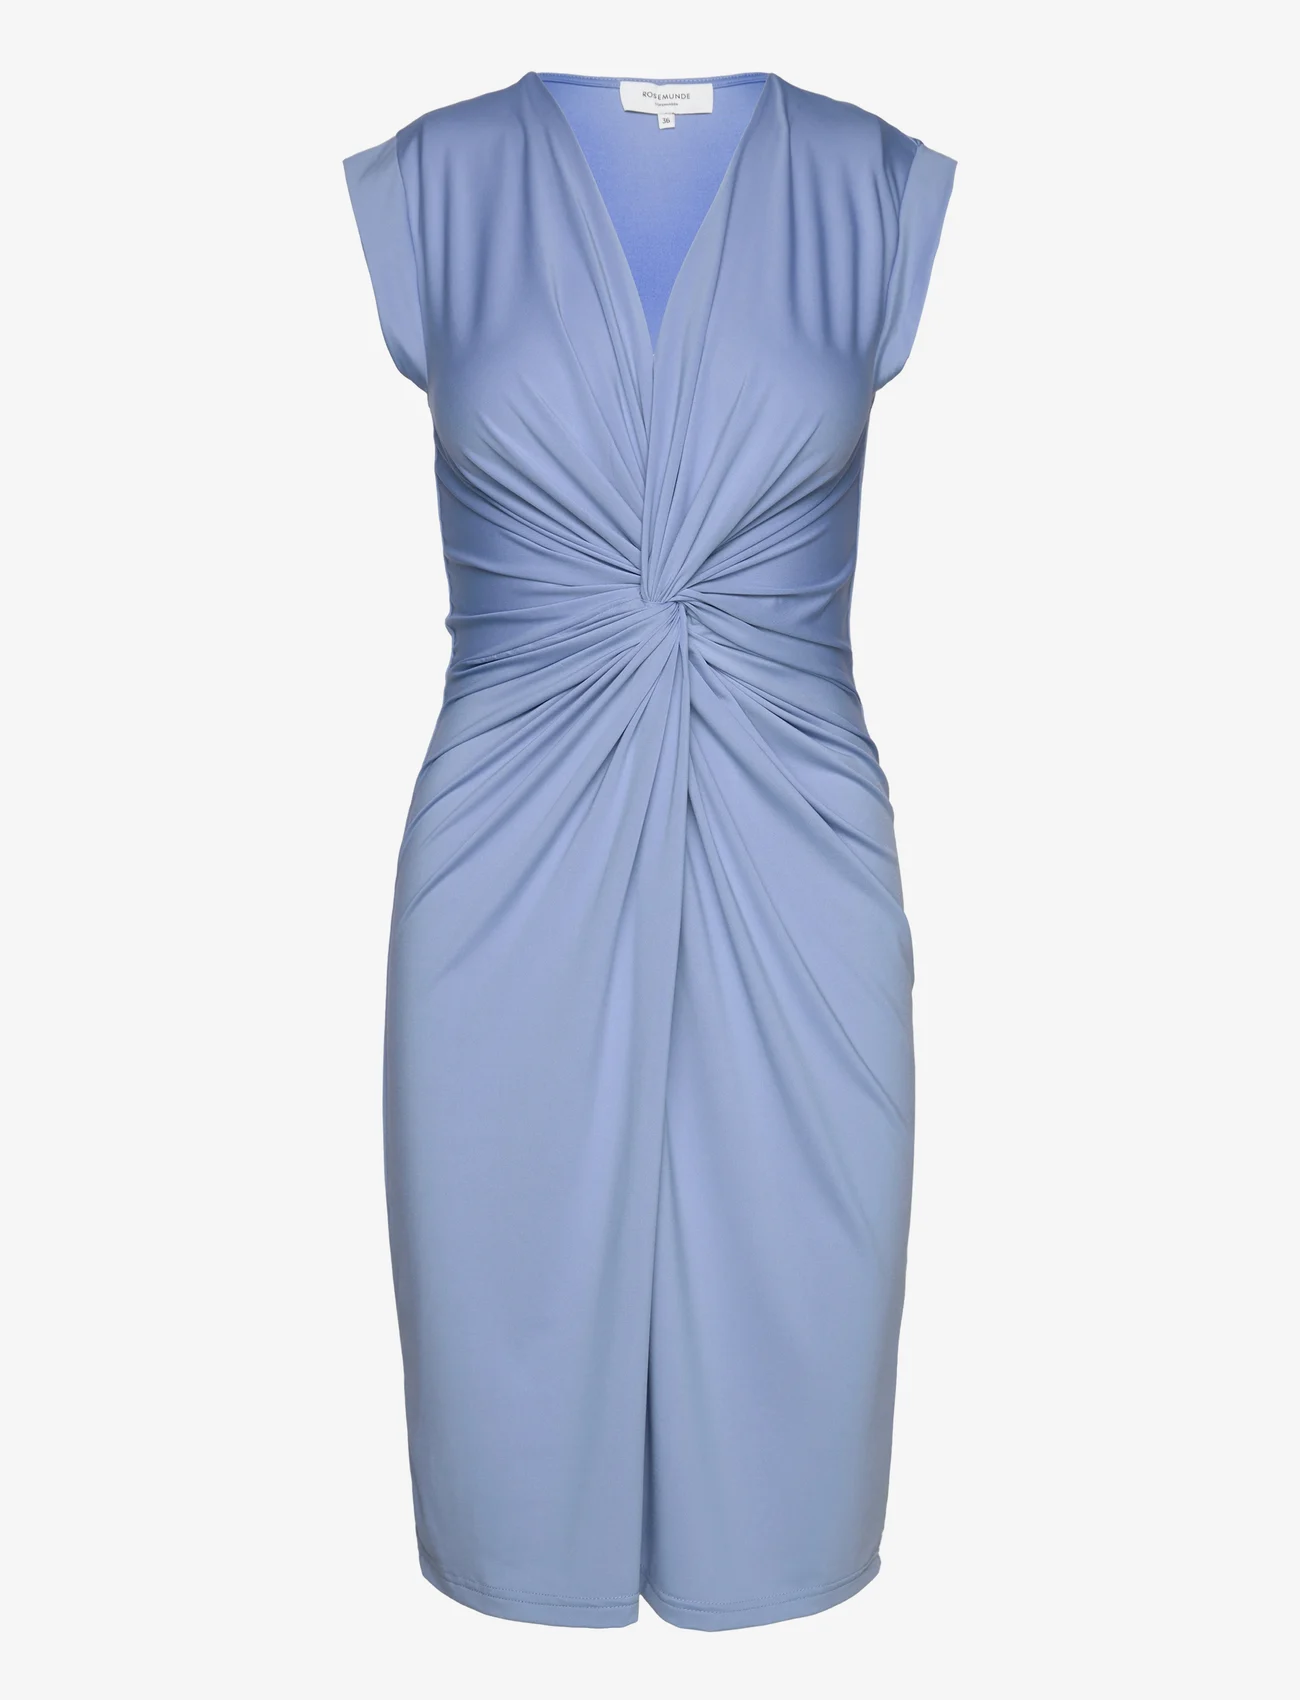 Rosemunde - Dress - festtøj til outletpriser - blue allure - 0